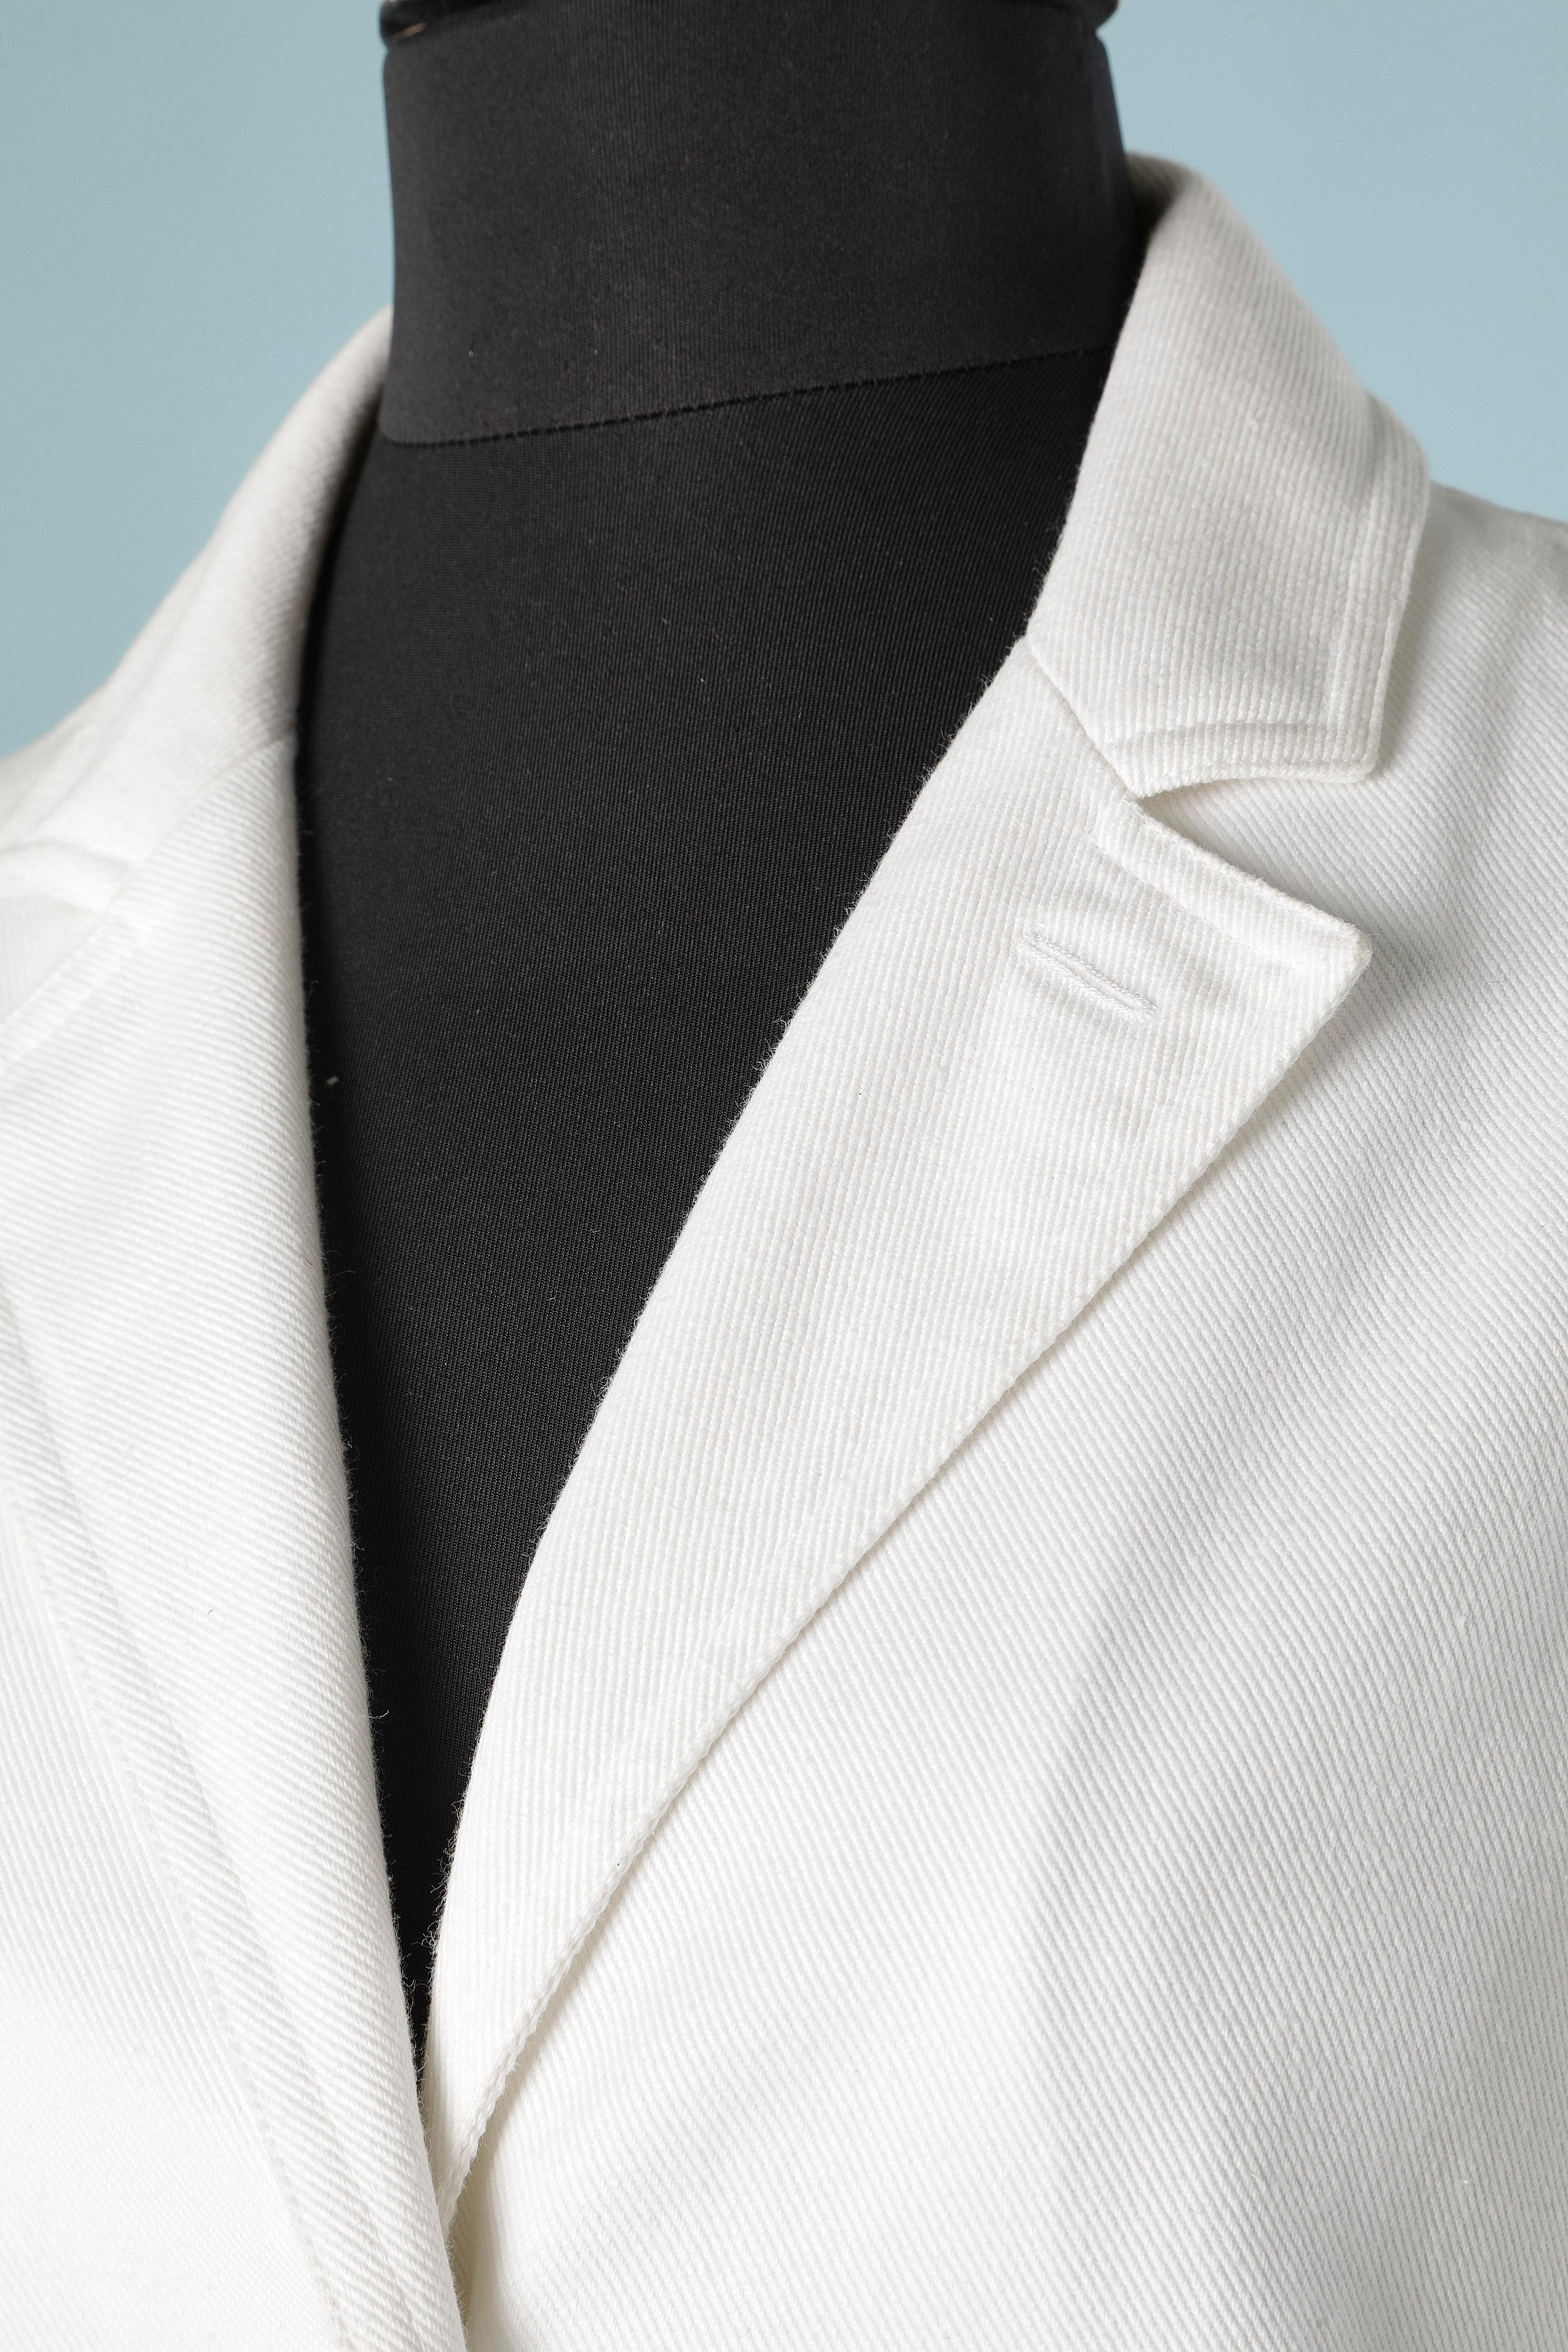 Veste blanche en coton à simple boutonnage avec boutons de la marque. Pas de doublure.
TAILLE 36 (S) 